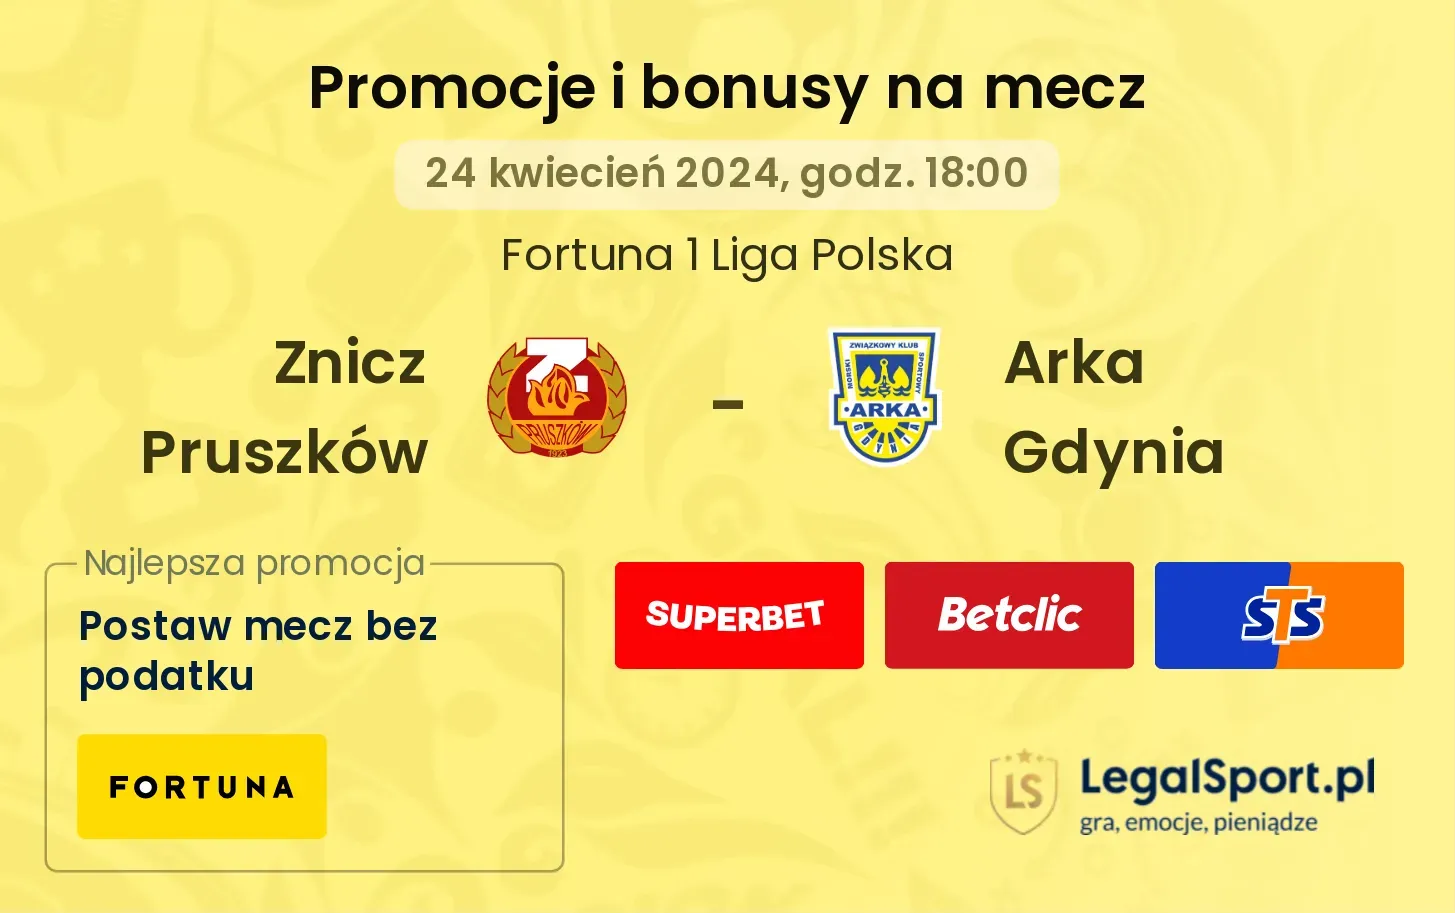 Znicz Pruszków - Arka Gdynia promocje bonusy na mecz